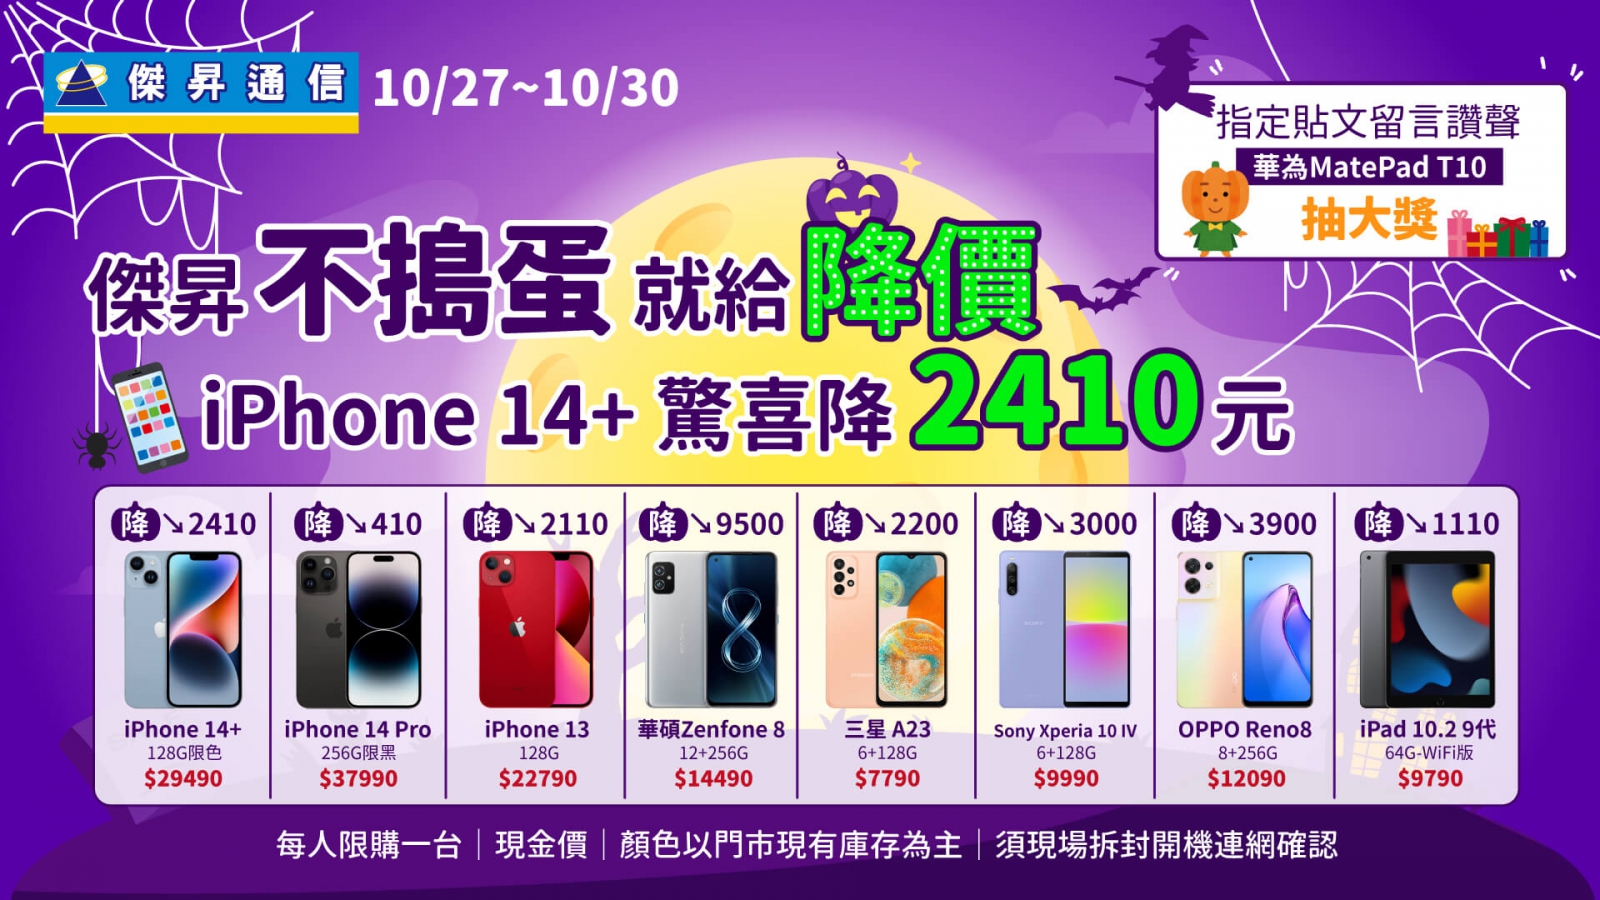 萬聖限定 iPhone 14 Pro降價、ZenFone 8下殺6折